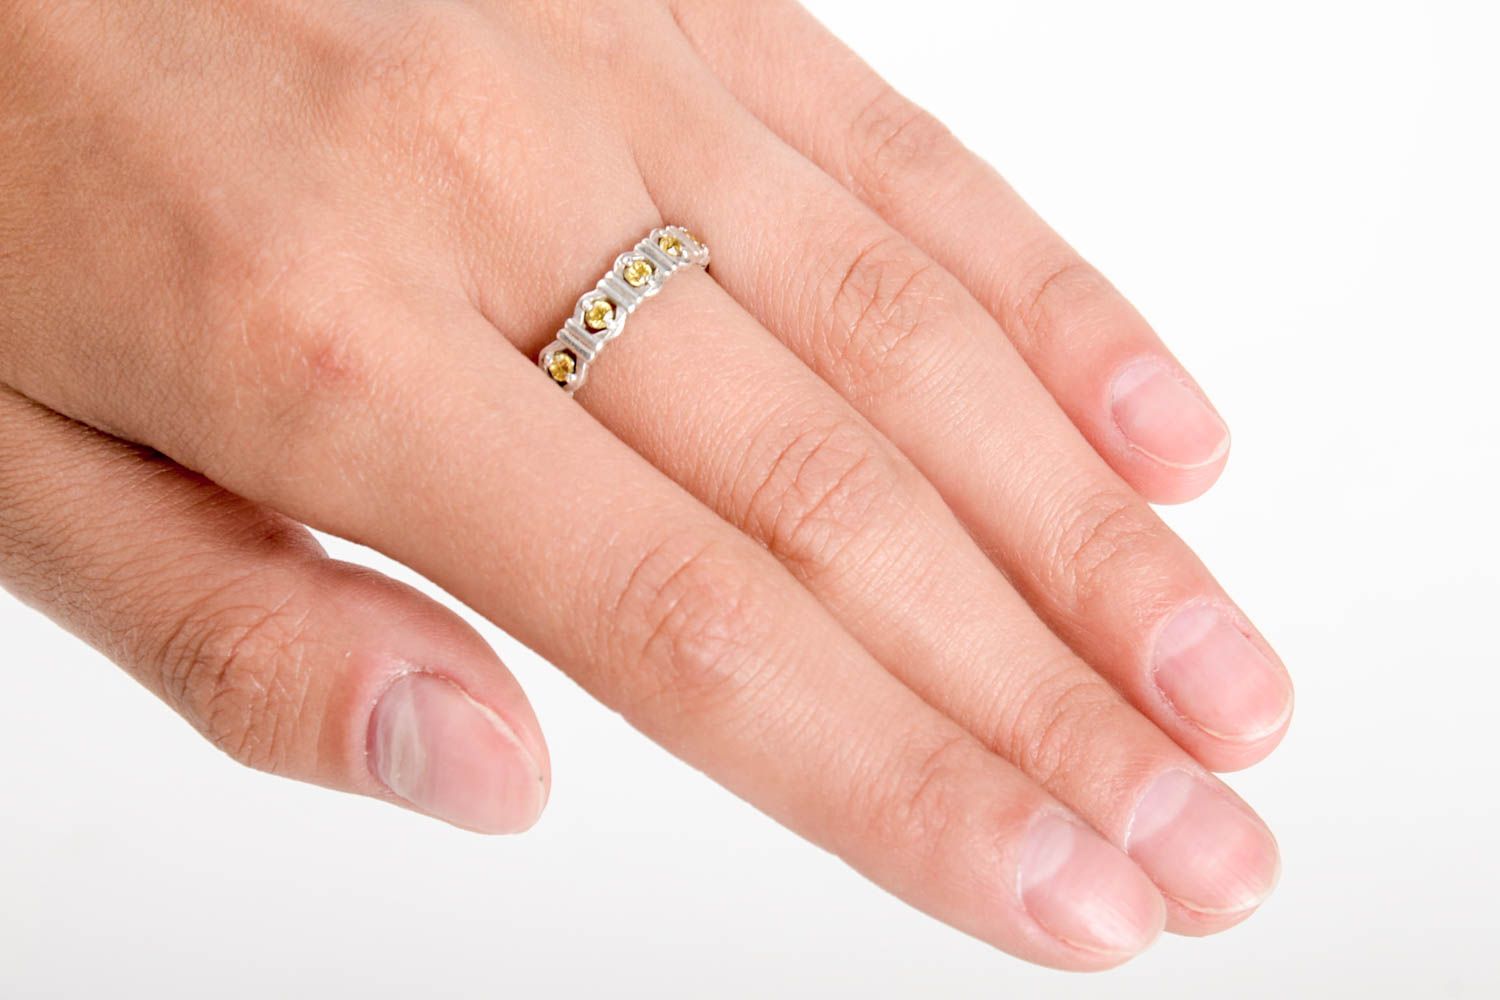 Damen Modeschmuck Mode Accessoires Finger Ring Geschenk Ideen Handarbeit schön foto 2